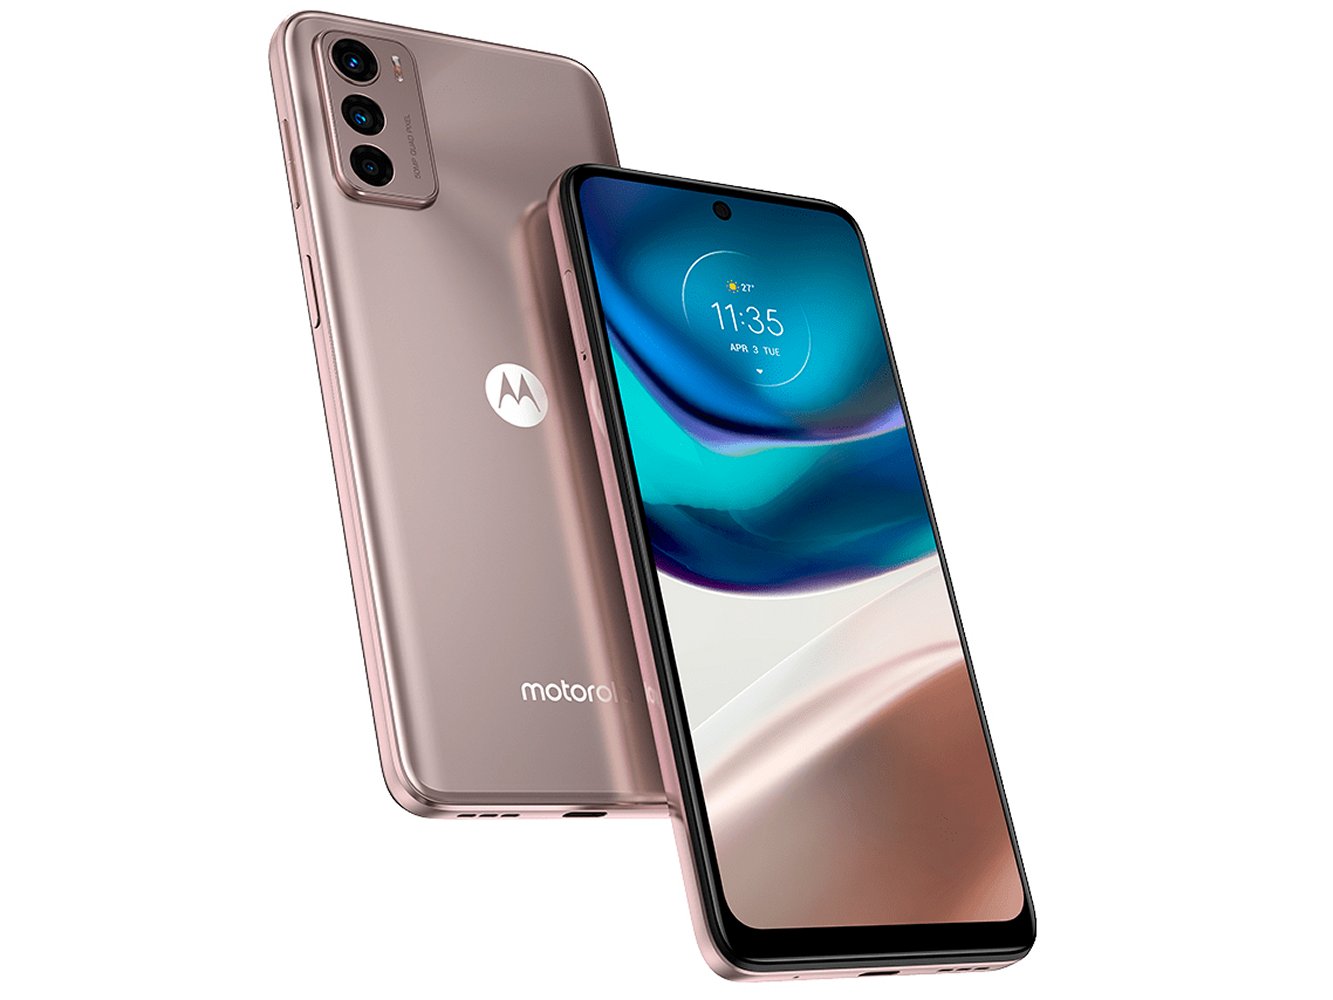 Prezzo Motorola G42 in offerta: da Trony a 159 euro